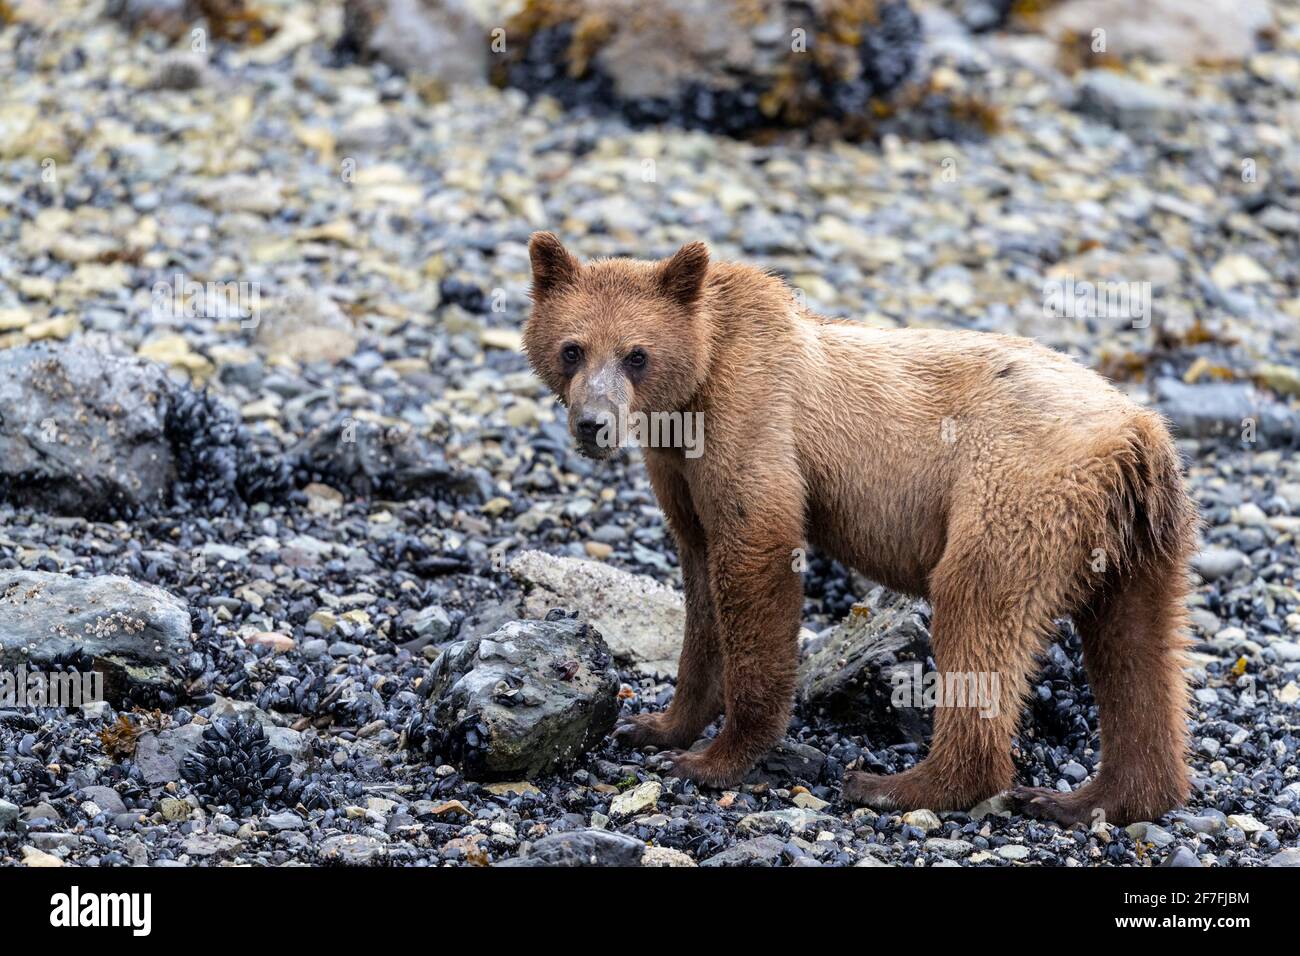 Jeune ours brun (Ursus arctos), alimentation d'invertébrés à marée basse dans le parc national de Glacier Bay, Alaska, États-Unis d'Amérique, Amérique du Nord Banque D'Images